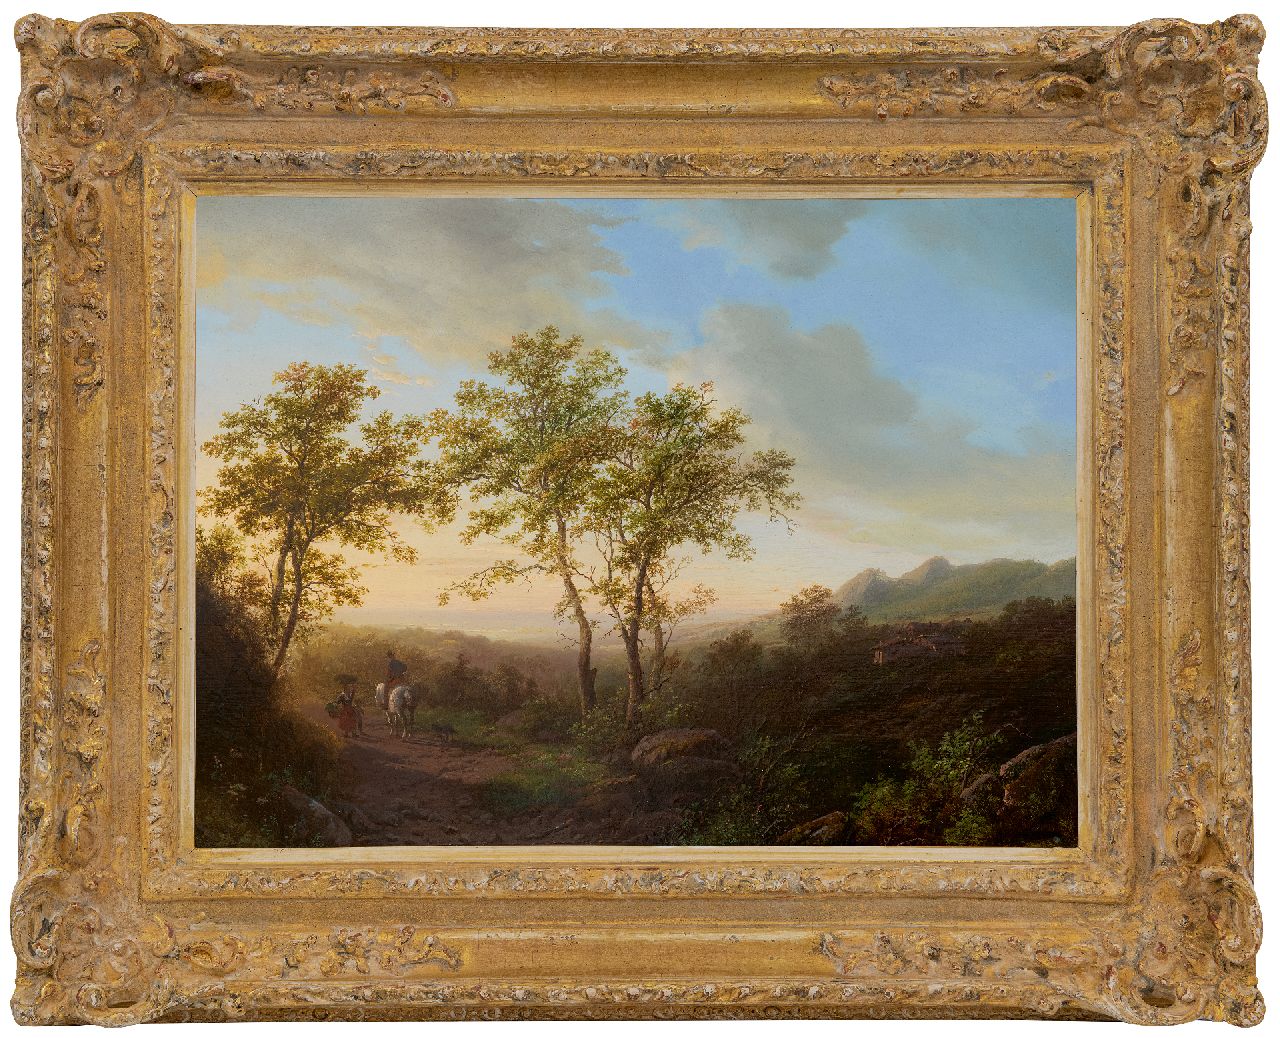 Bodeman W.  | Willem Bodeman | Schilderijen te koop aangeboden | Heuvelachtig landschap bij avondschemering, olieverf op paneel 38,6 x 52,0 cm, gesigneerd rechtsonder en gedateerd 1842